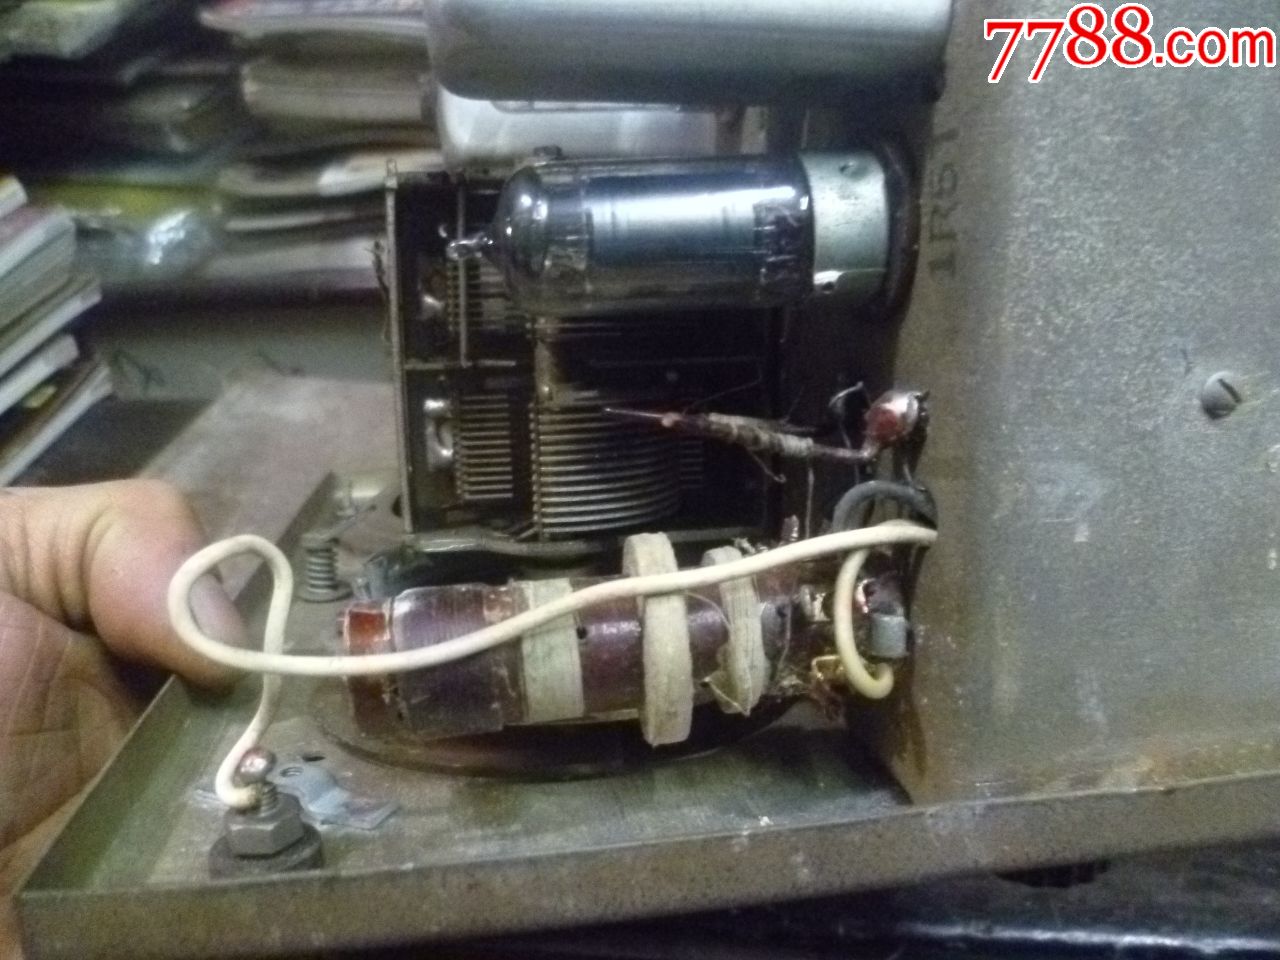 1958年长江牌五灯直流收音机国营重庆无线电厂(*用型)